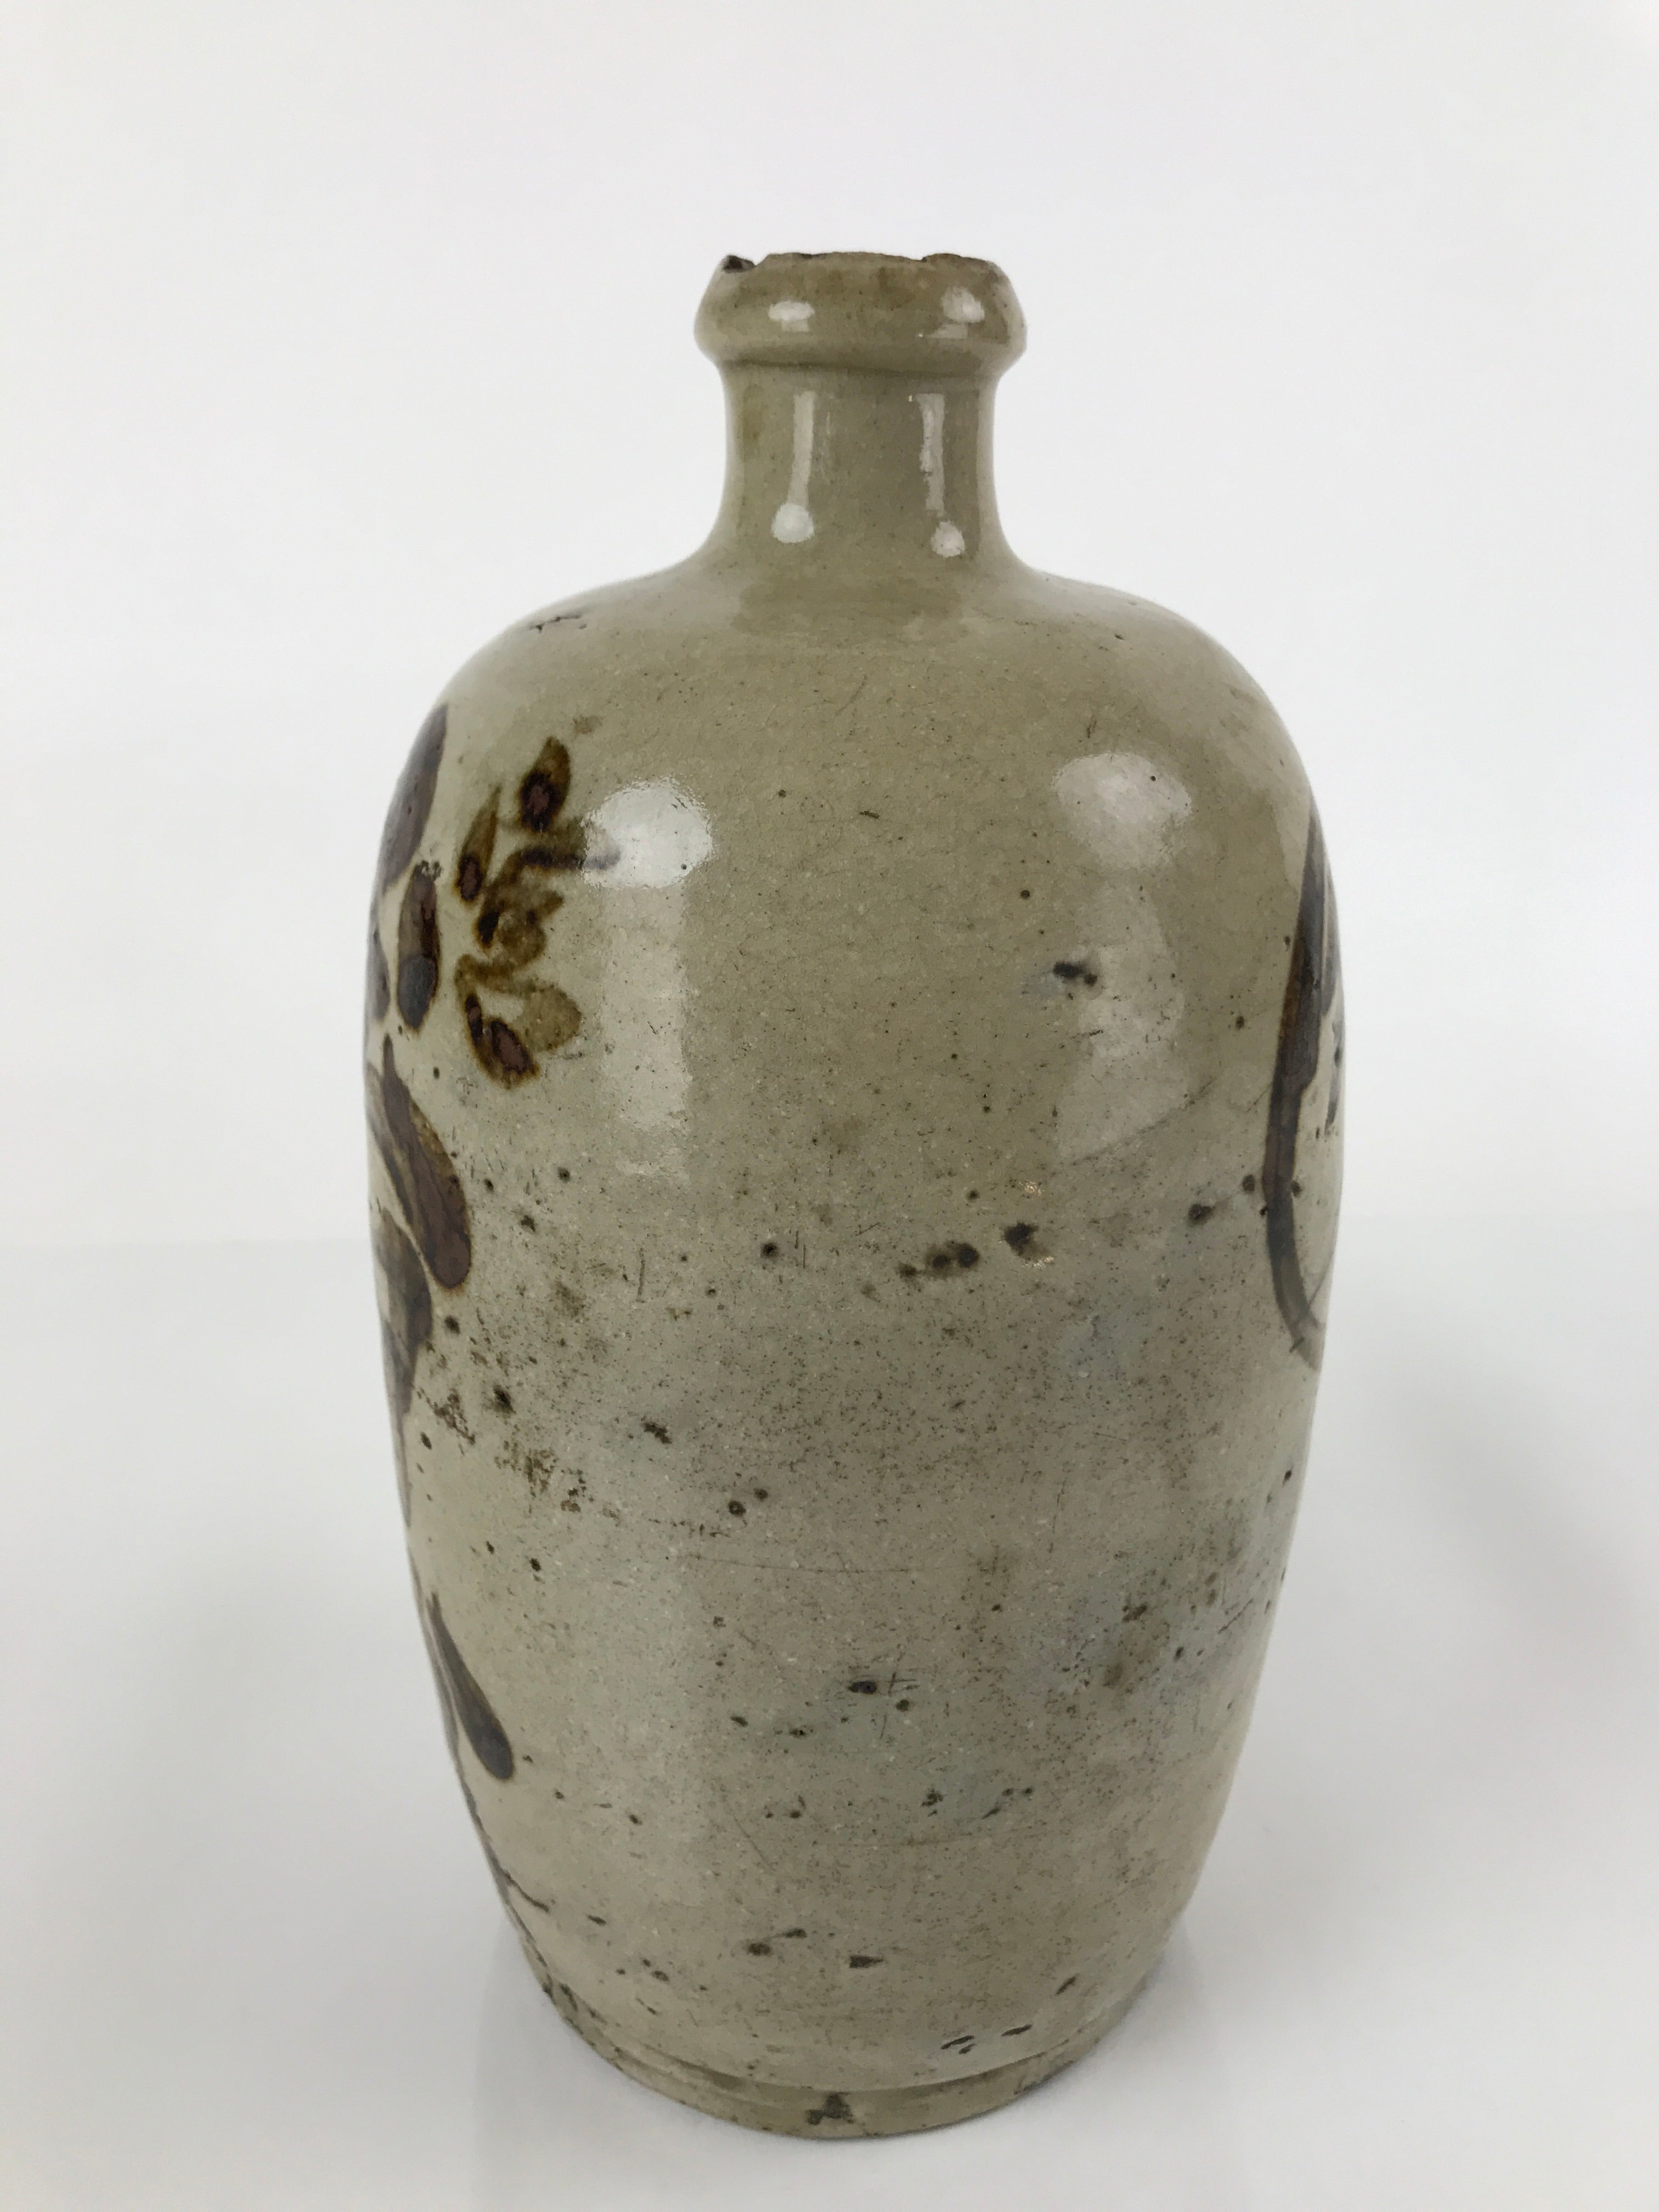 Antique C1900 Japanese Ceramic Sake Bottle Kayoi-Tokkuri Gray Black Kanji TS633